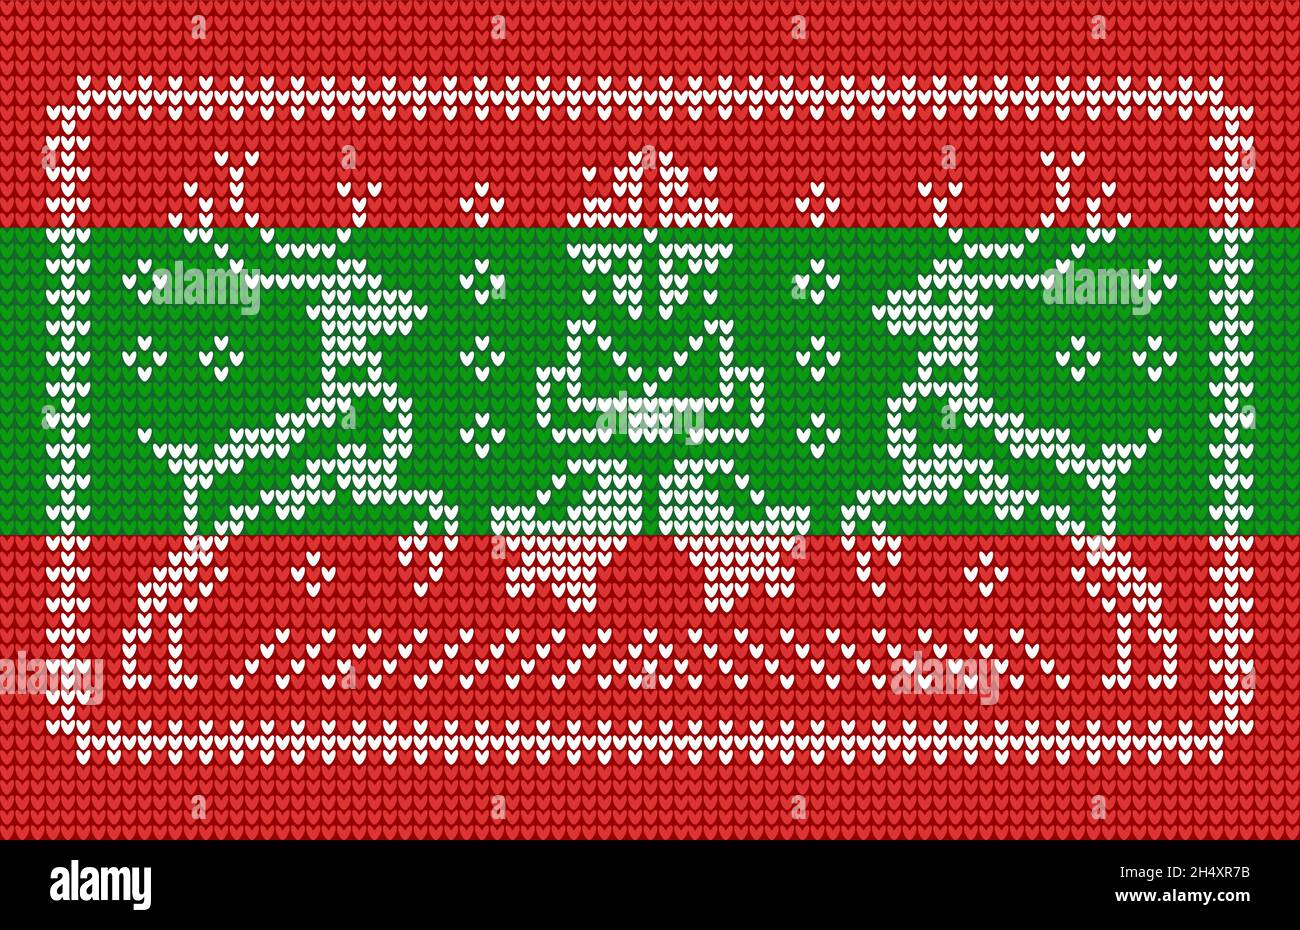 Strickmuster im hässlichen Pullover-Stil mit Jingle-Glocken und Weihnachtsrentieren Stock Vektor